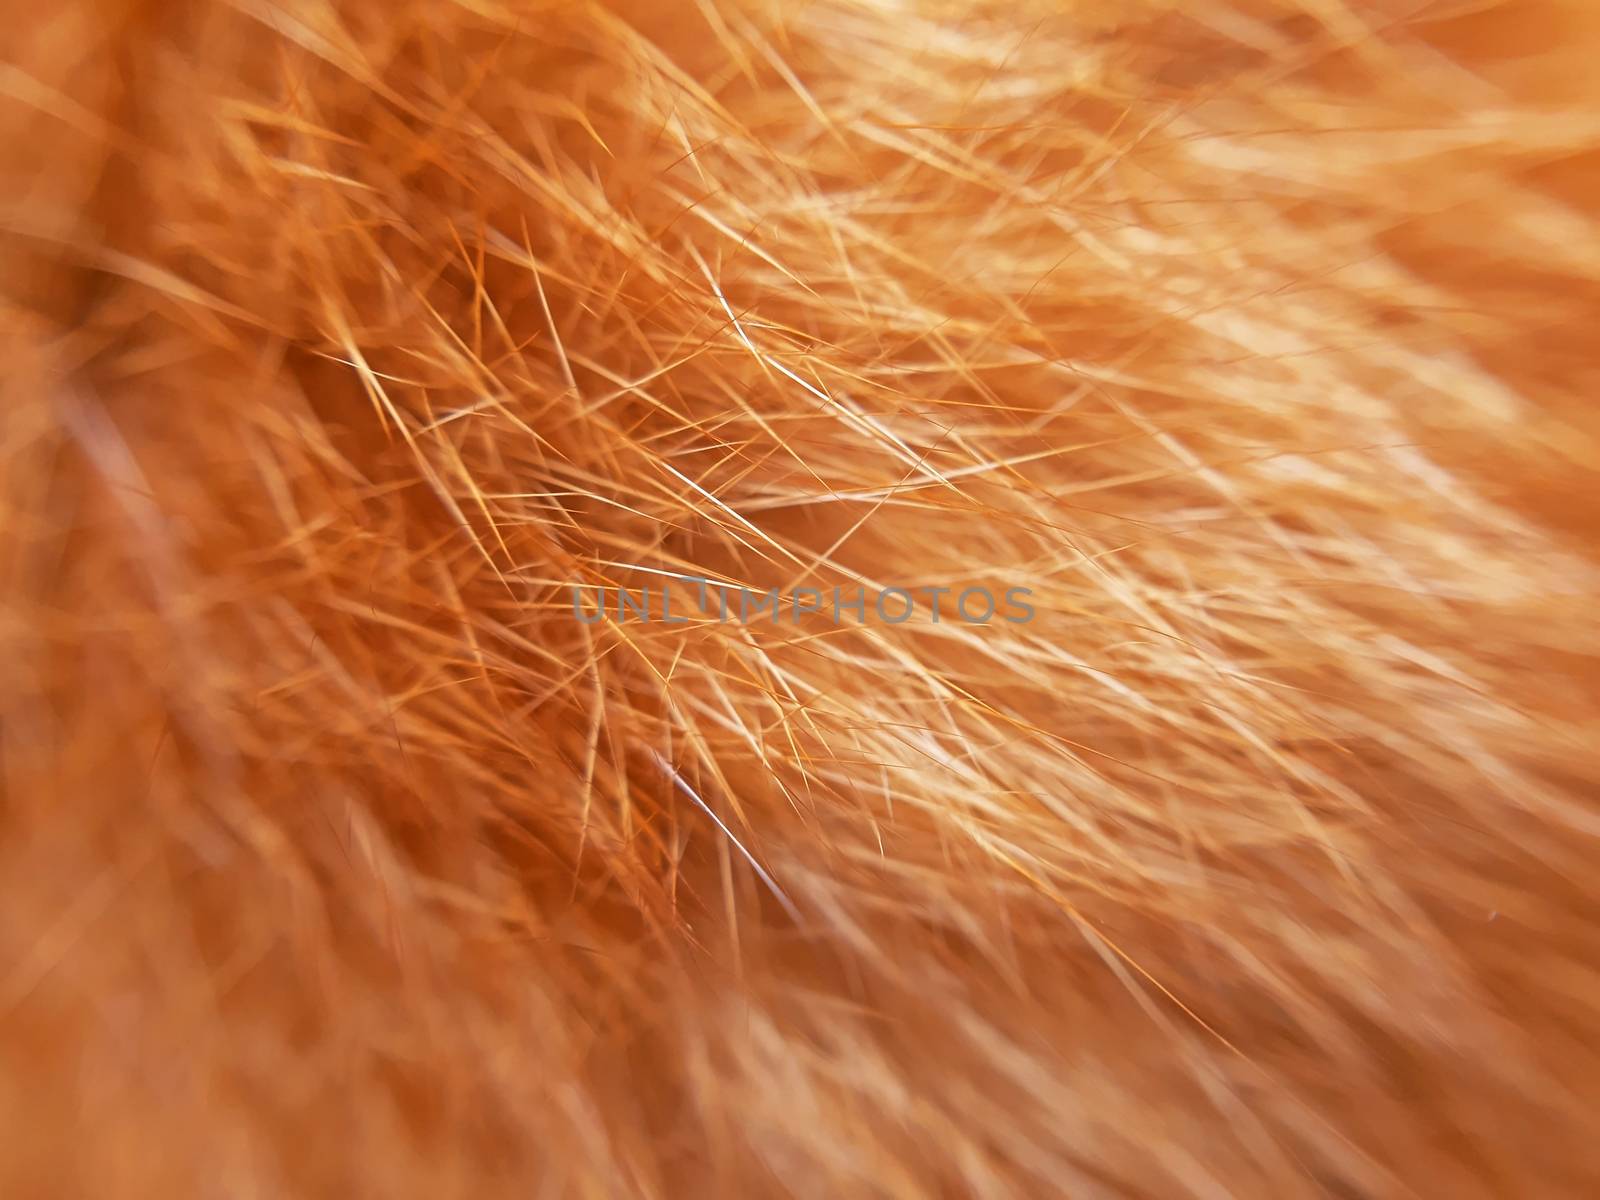 Orange cat fur background texture close up.